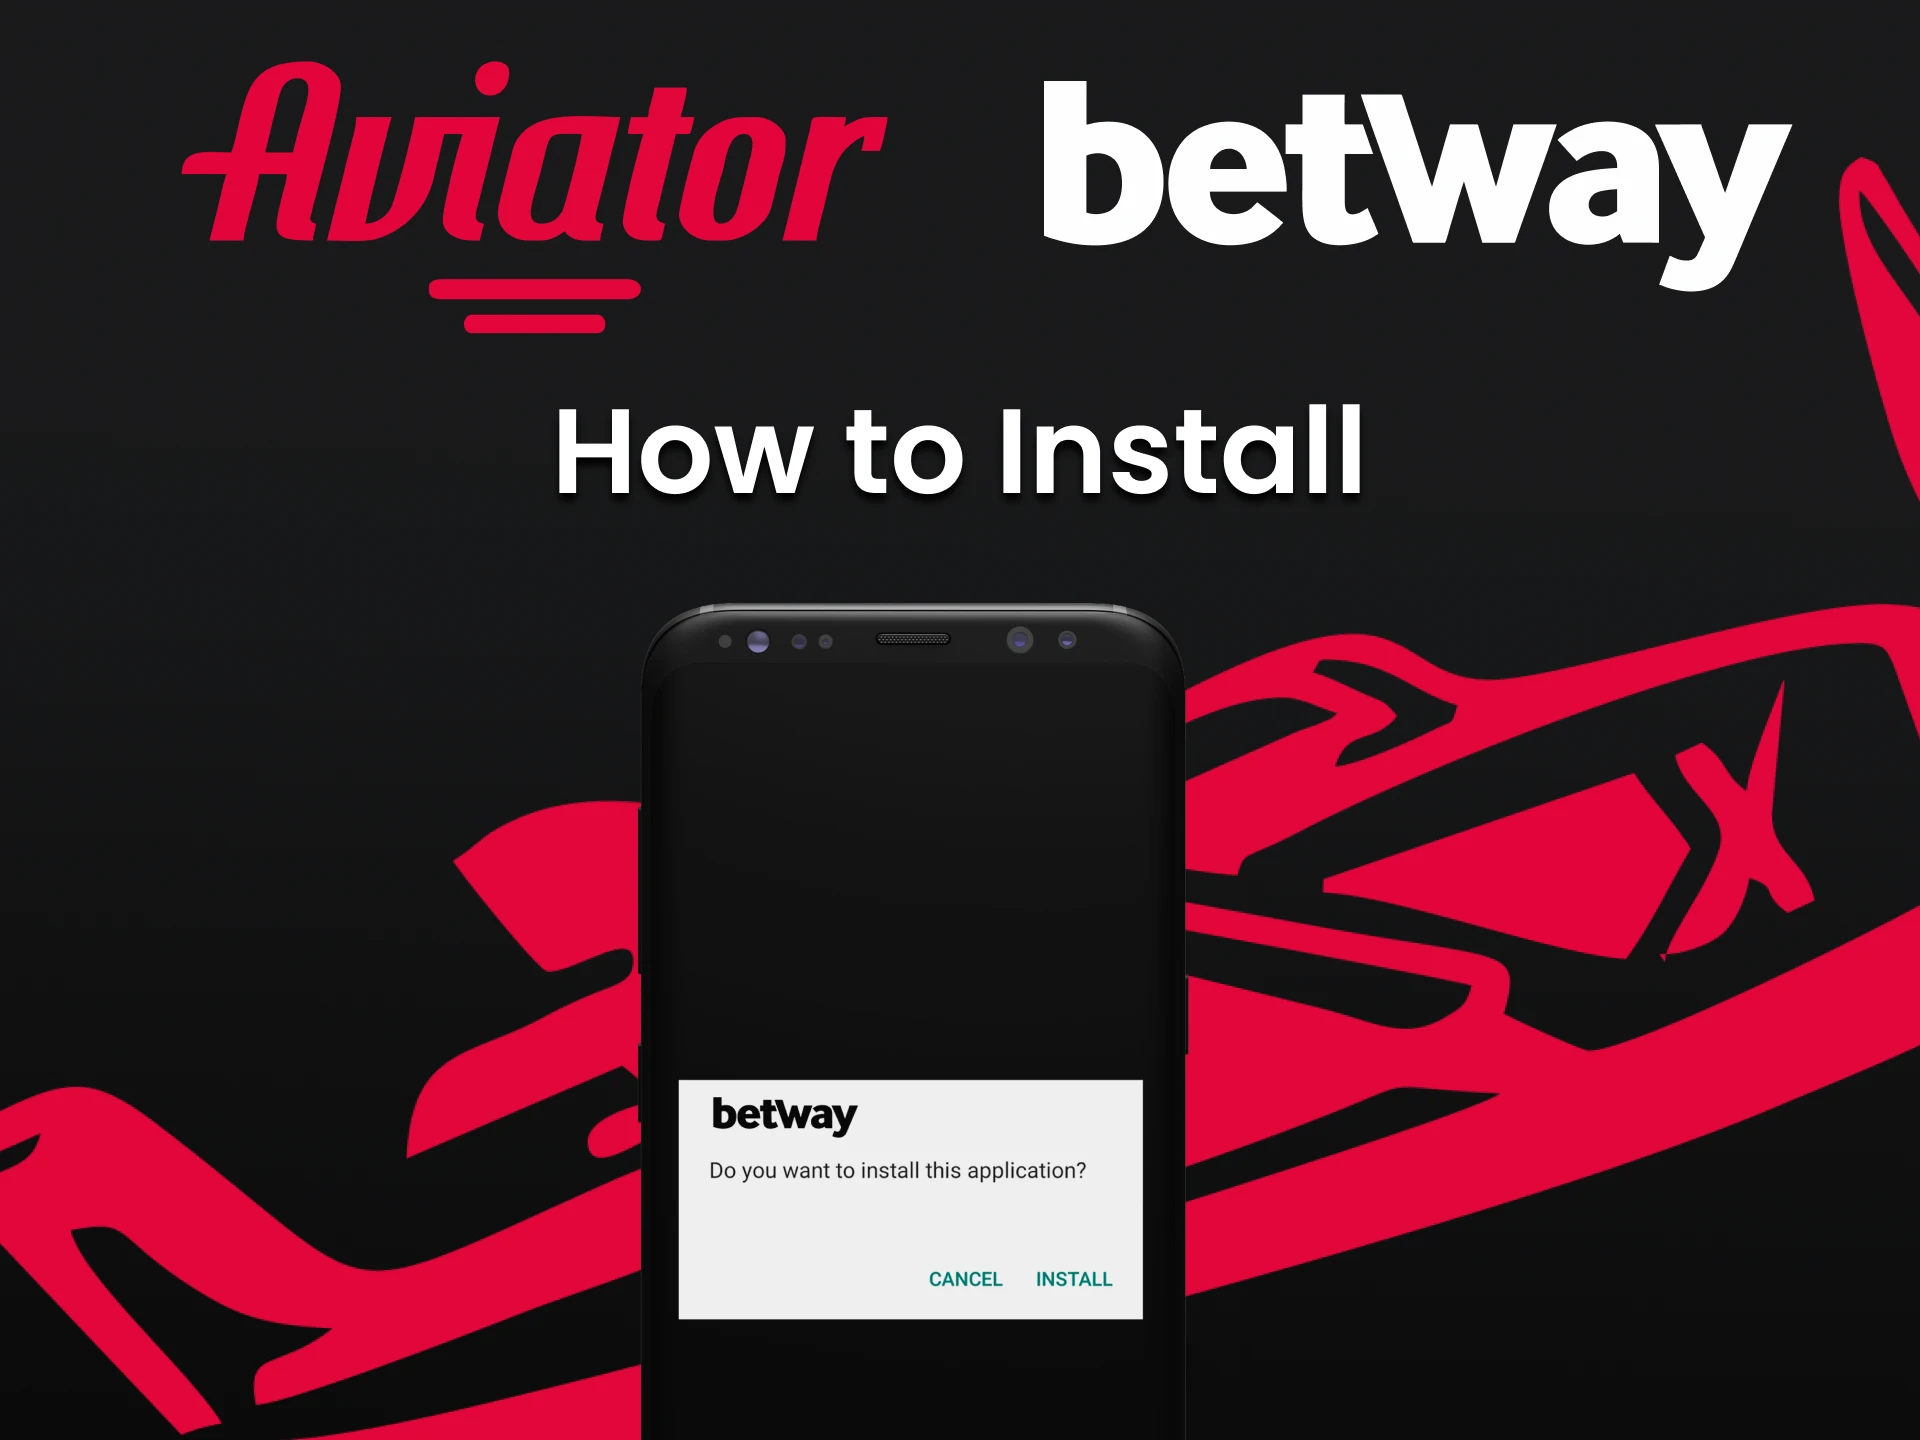 Instale o aplicativo da Betway para jogar o Aviator.